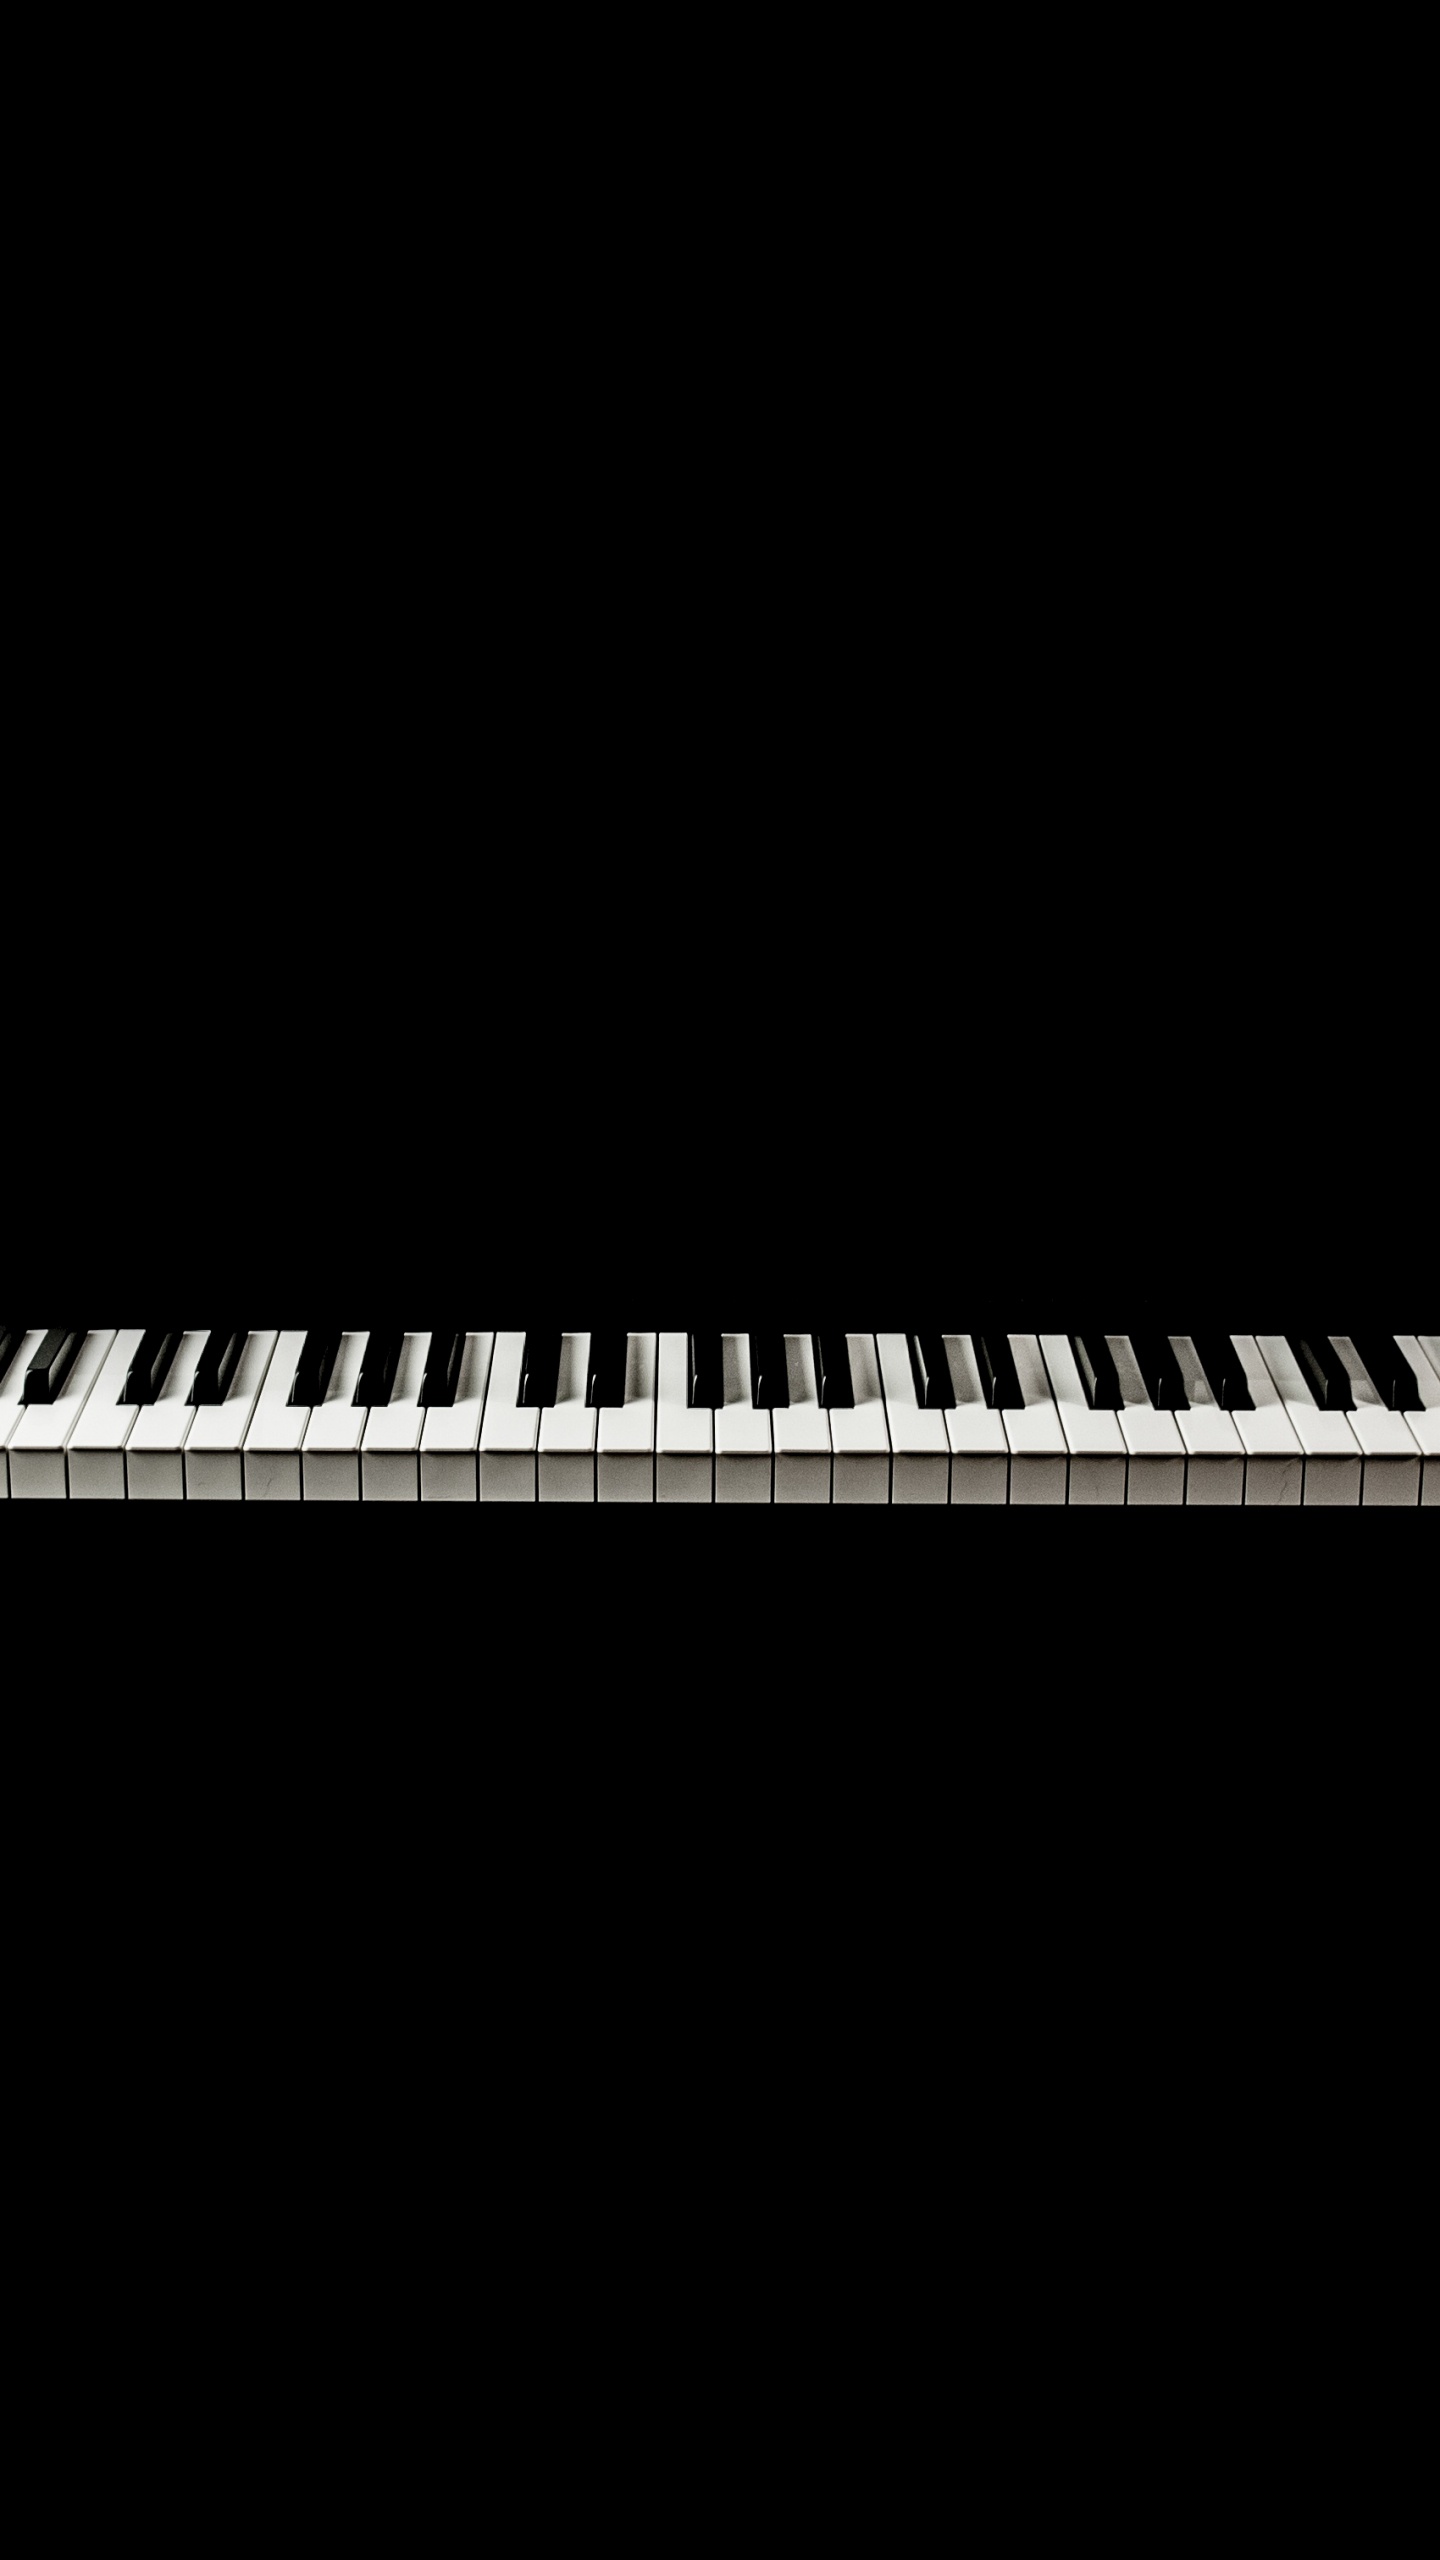 音乐键盘, 数字钢琴, 电子琴, 钢琴, 键盘 壁纸 1440x2560 允许